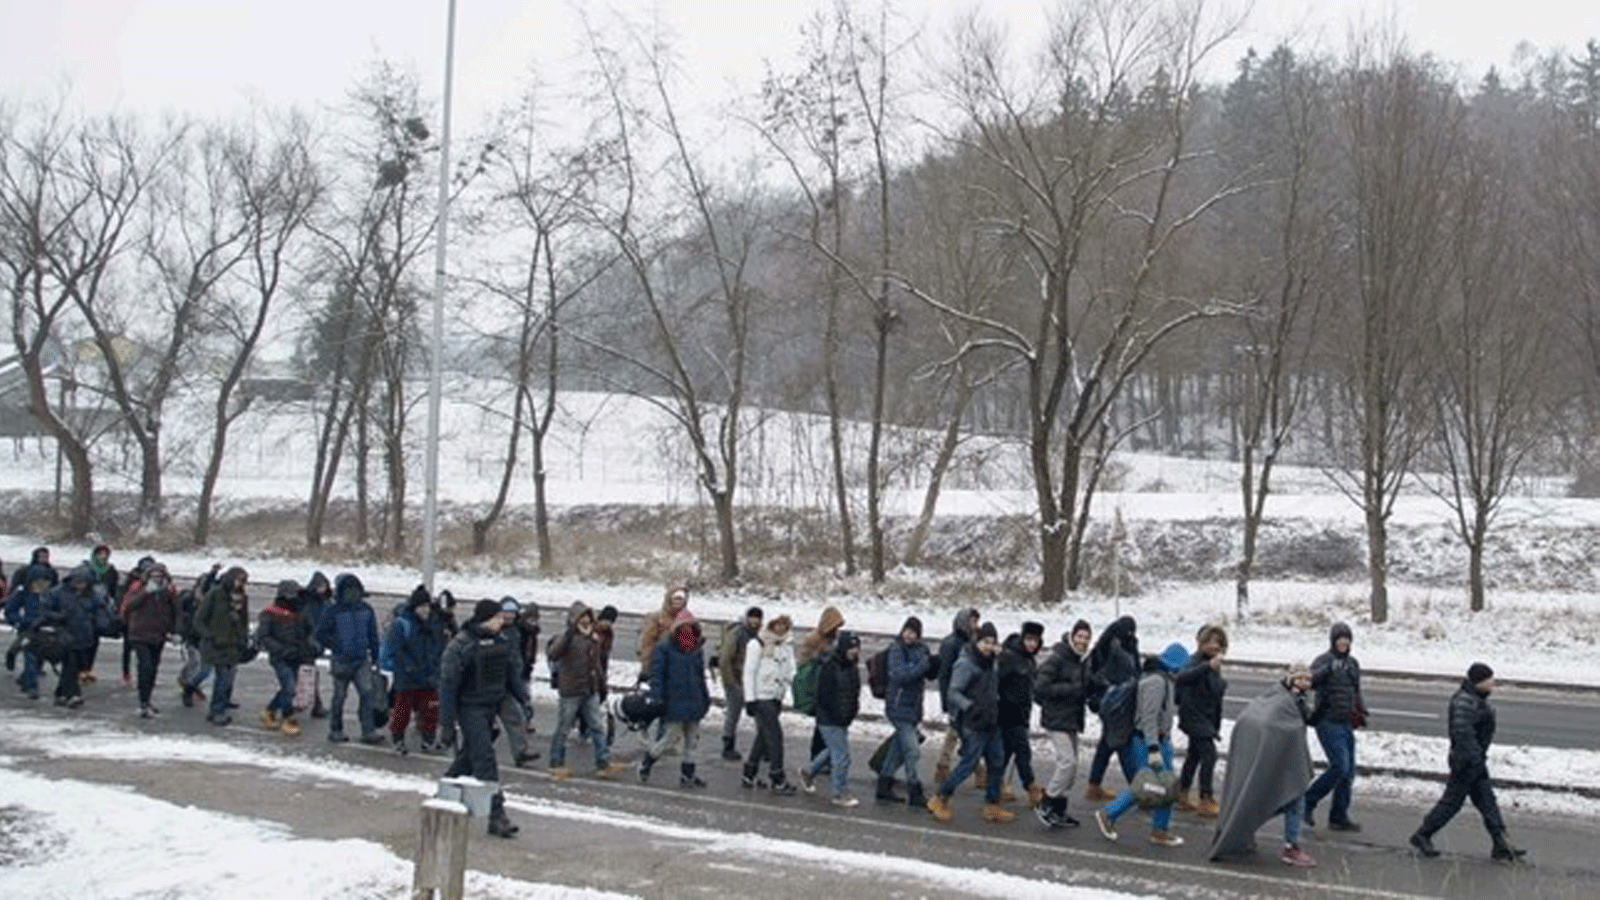 لاجئون ومهاجرون يسيرون لعبور الحدود السلوفينية-النمساوية في 5 يناير 2016 في سينتيلي